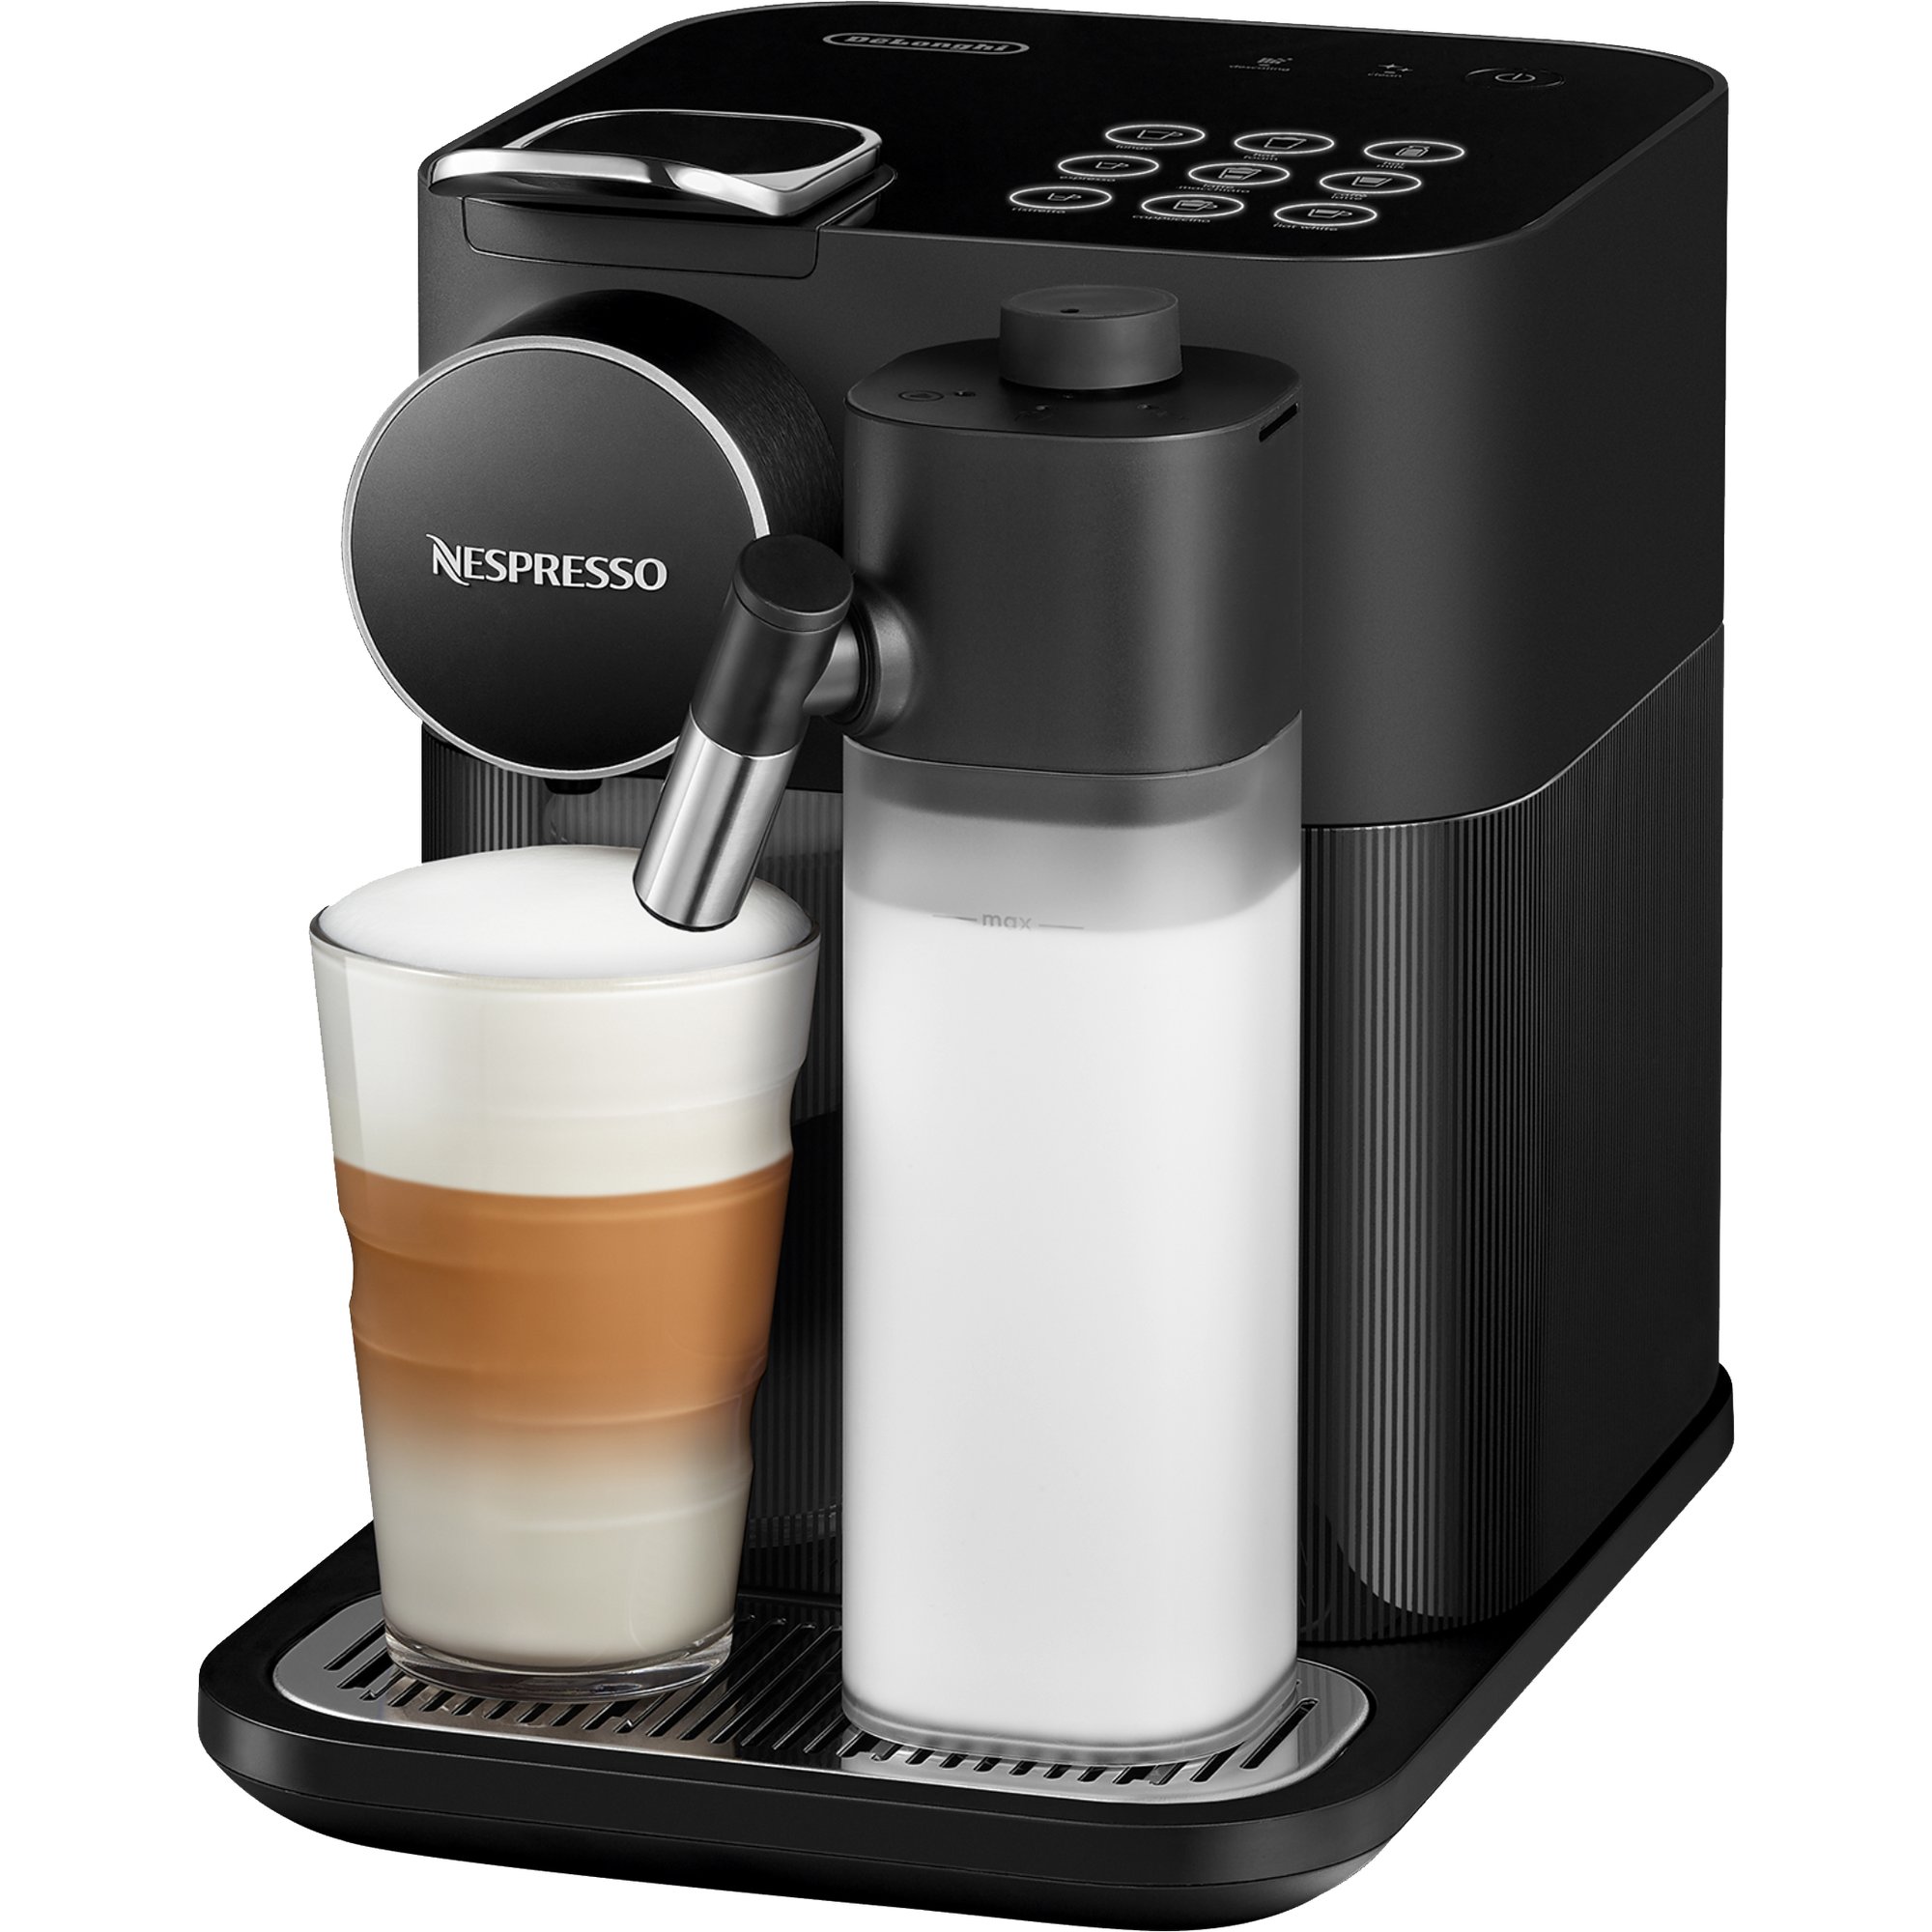 Vis stedet lomme Rynke panden Gran Lattissima kaffemaskine, 1,3 liter, sort fra Nespresso